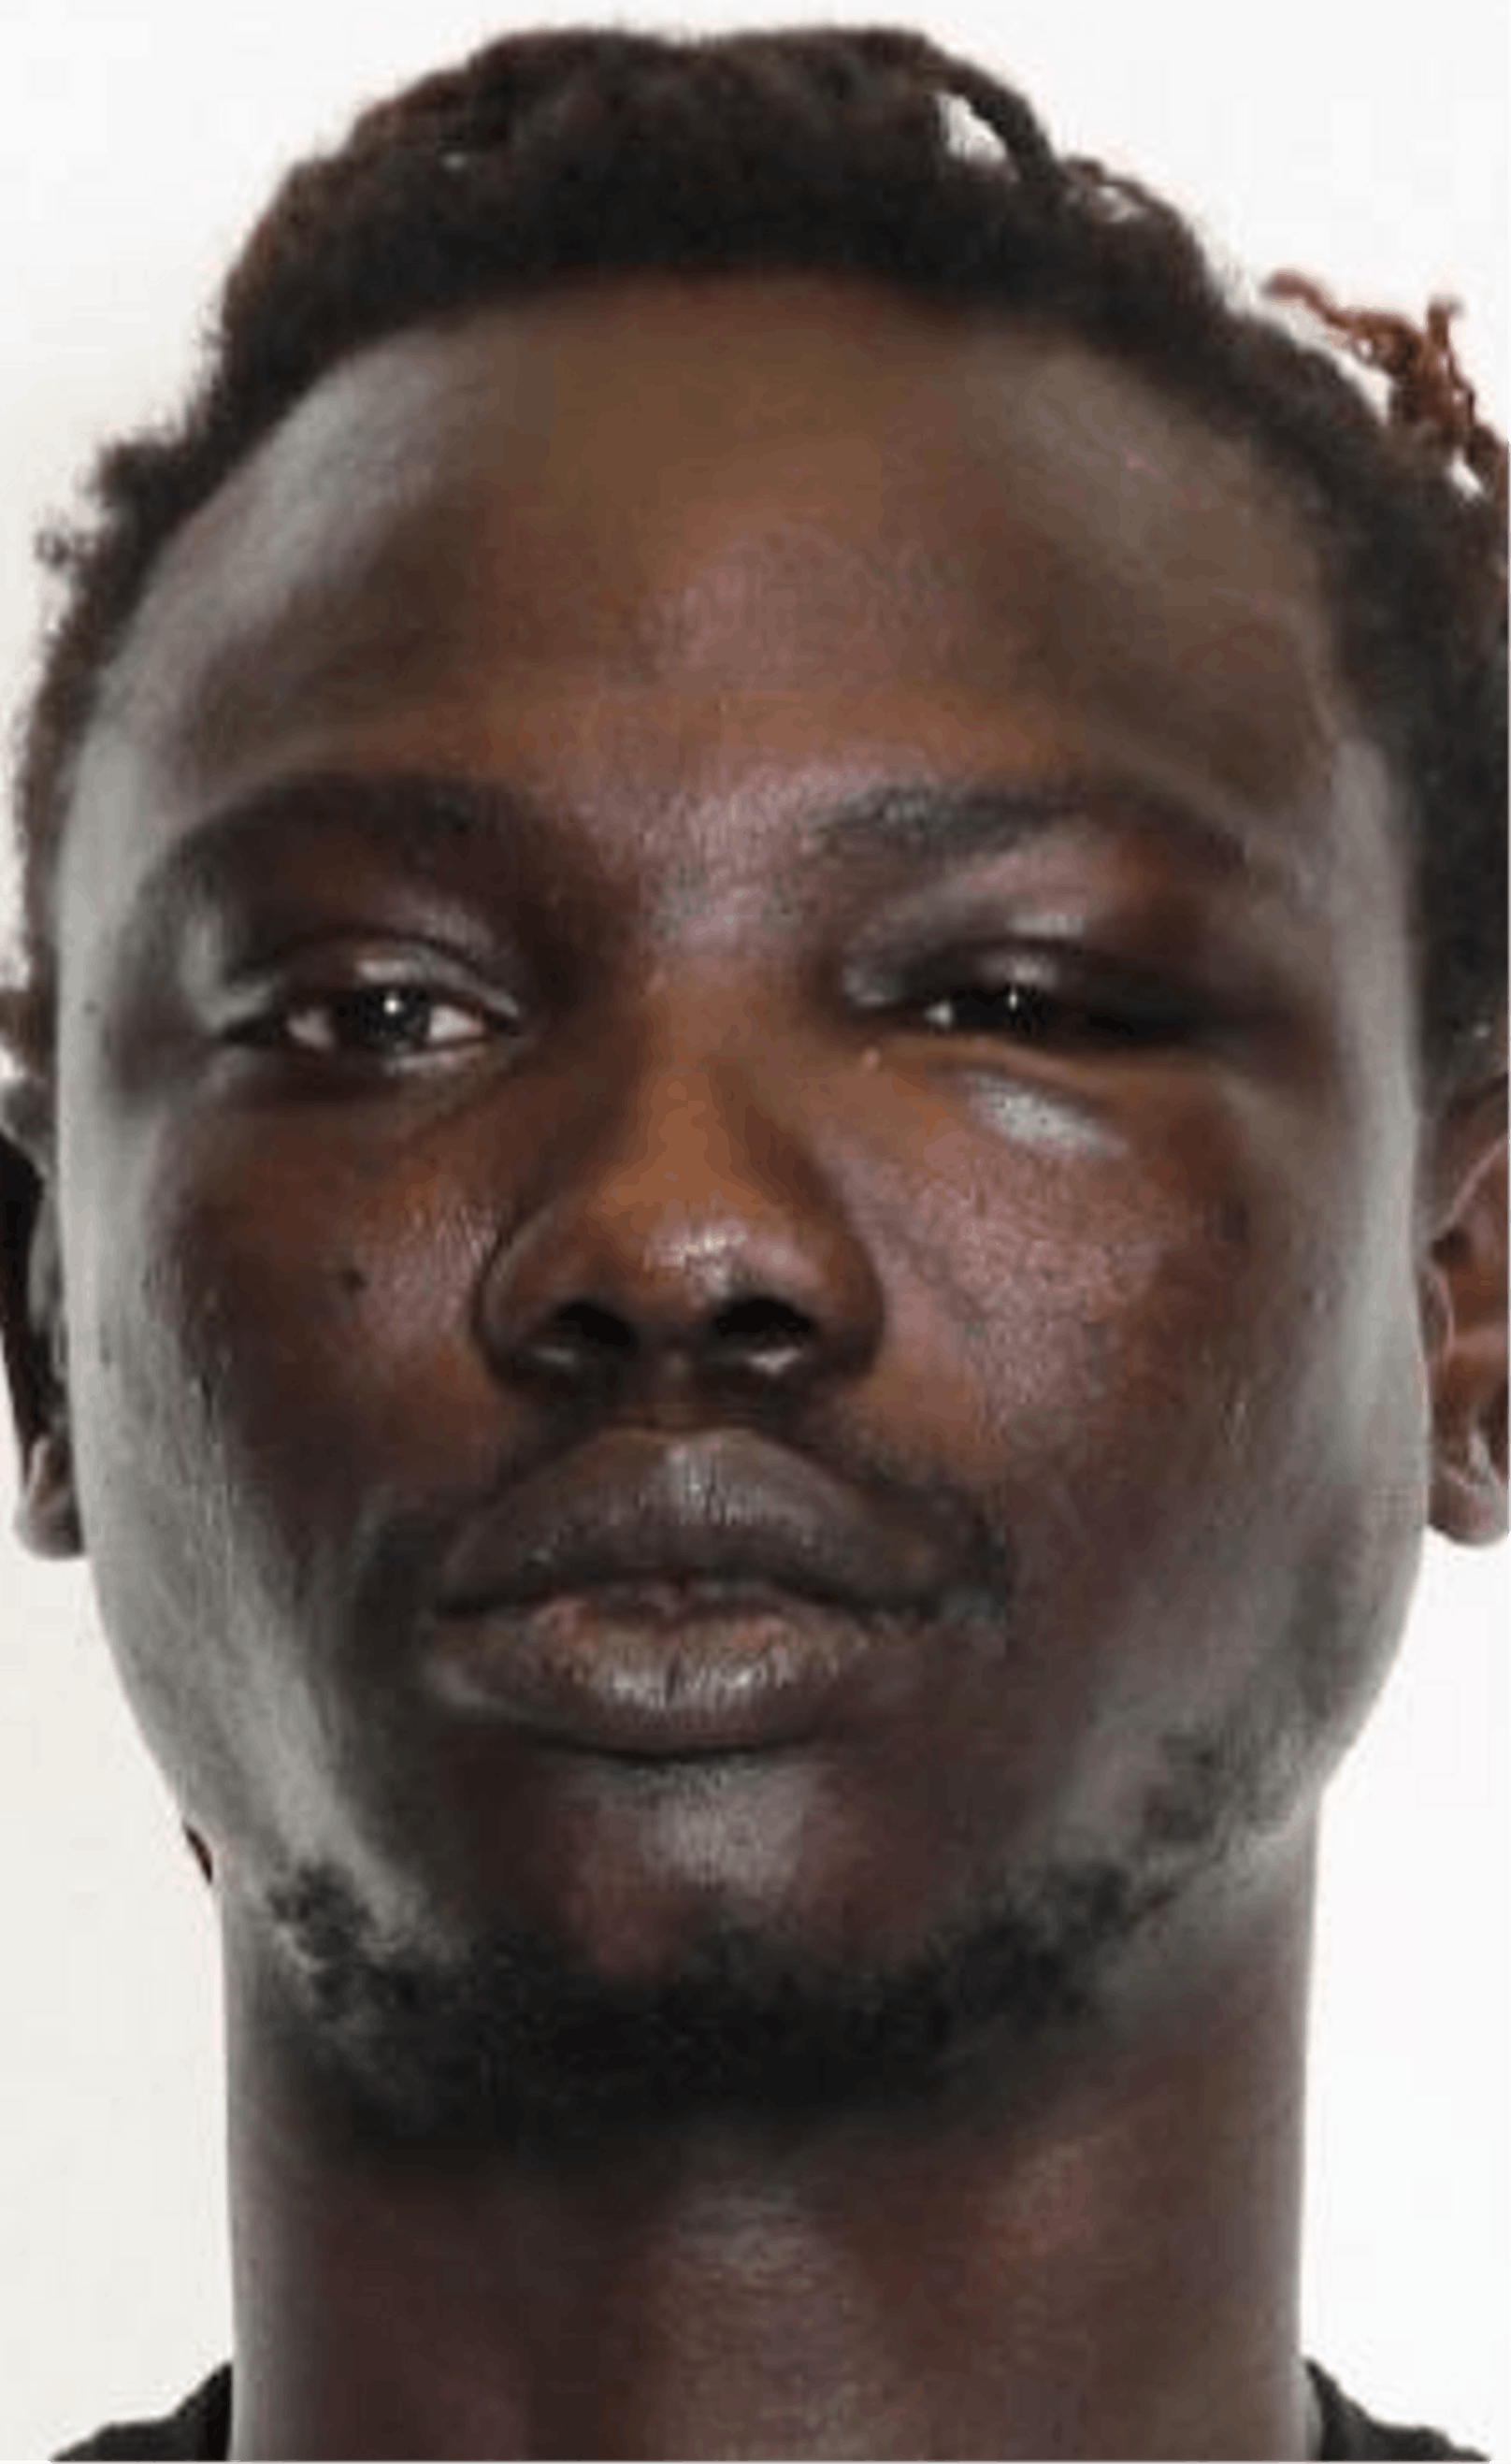 Der 39-jährige Afrikaner Musa Nije wird wegen Vergewaltigung gesucht. Nije wurde zu zwei Jahren und drei Monaten Gefängnis verurteilt.